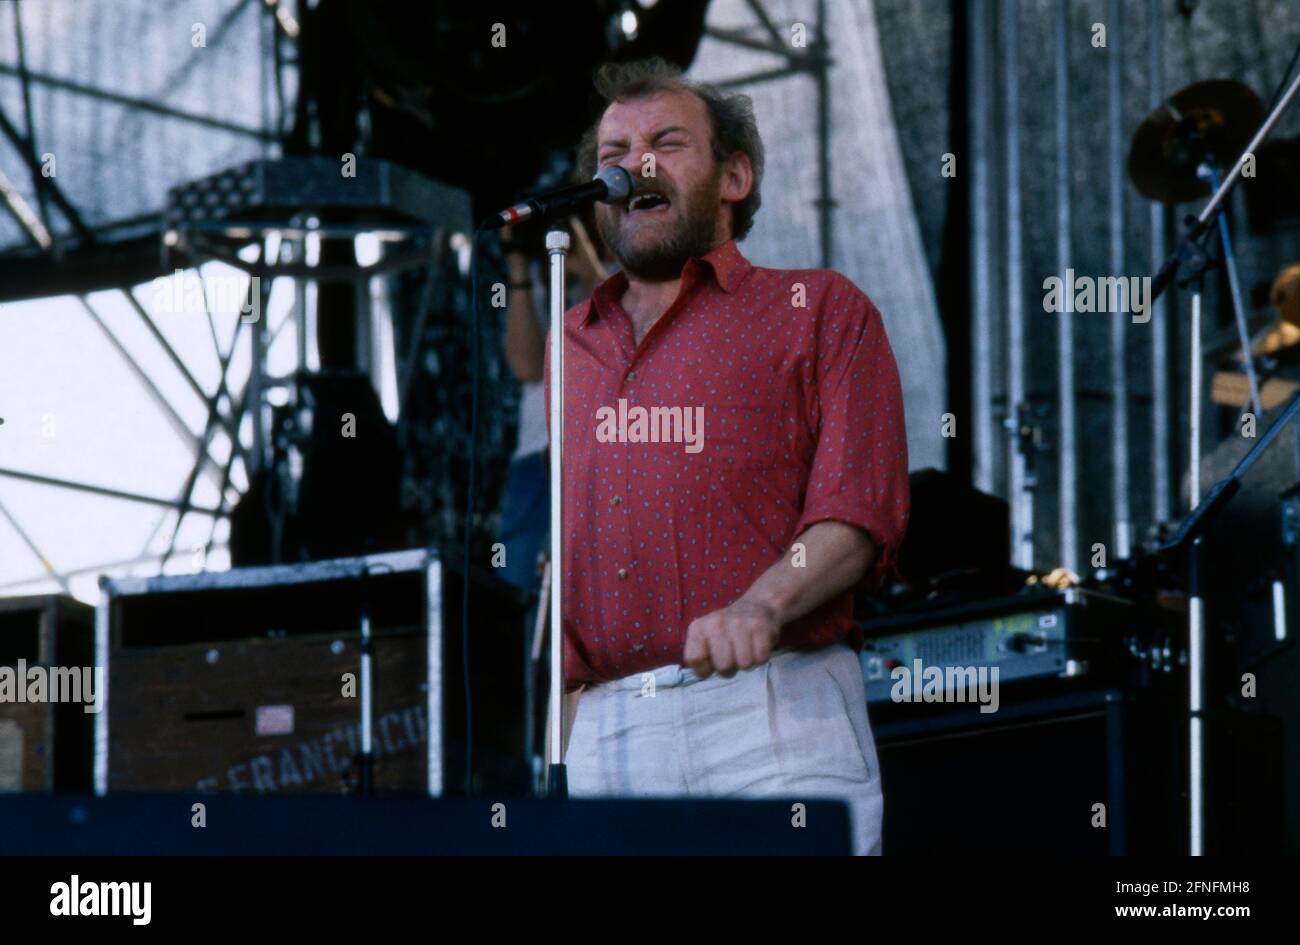 Joe Cocker, britischer Rock und Blues Sänger, bei einem Konzert, 1987. Joe Cocker, British Rock and Blues singer, on stage, 1987. Stock Photo